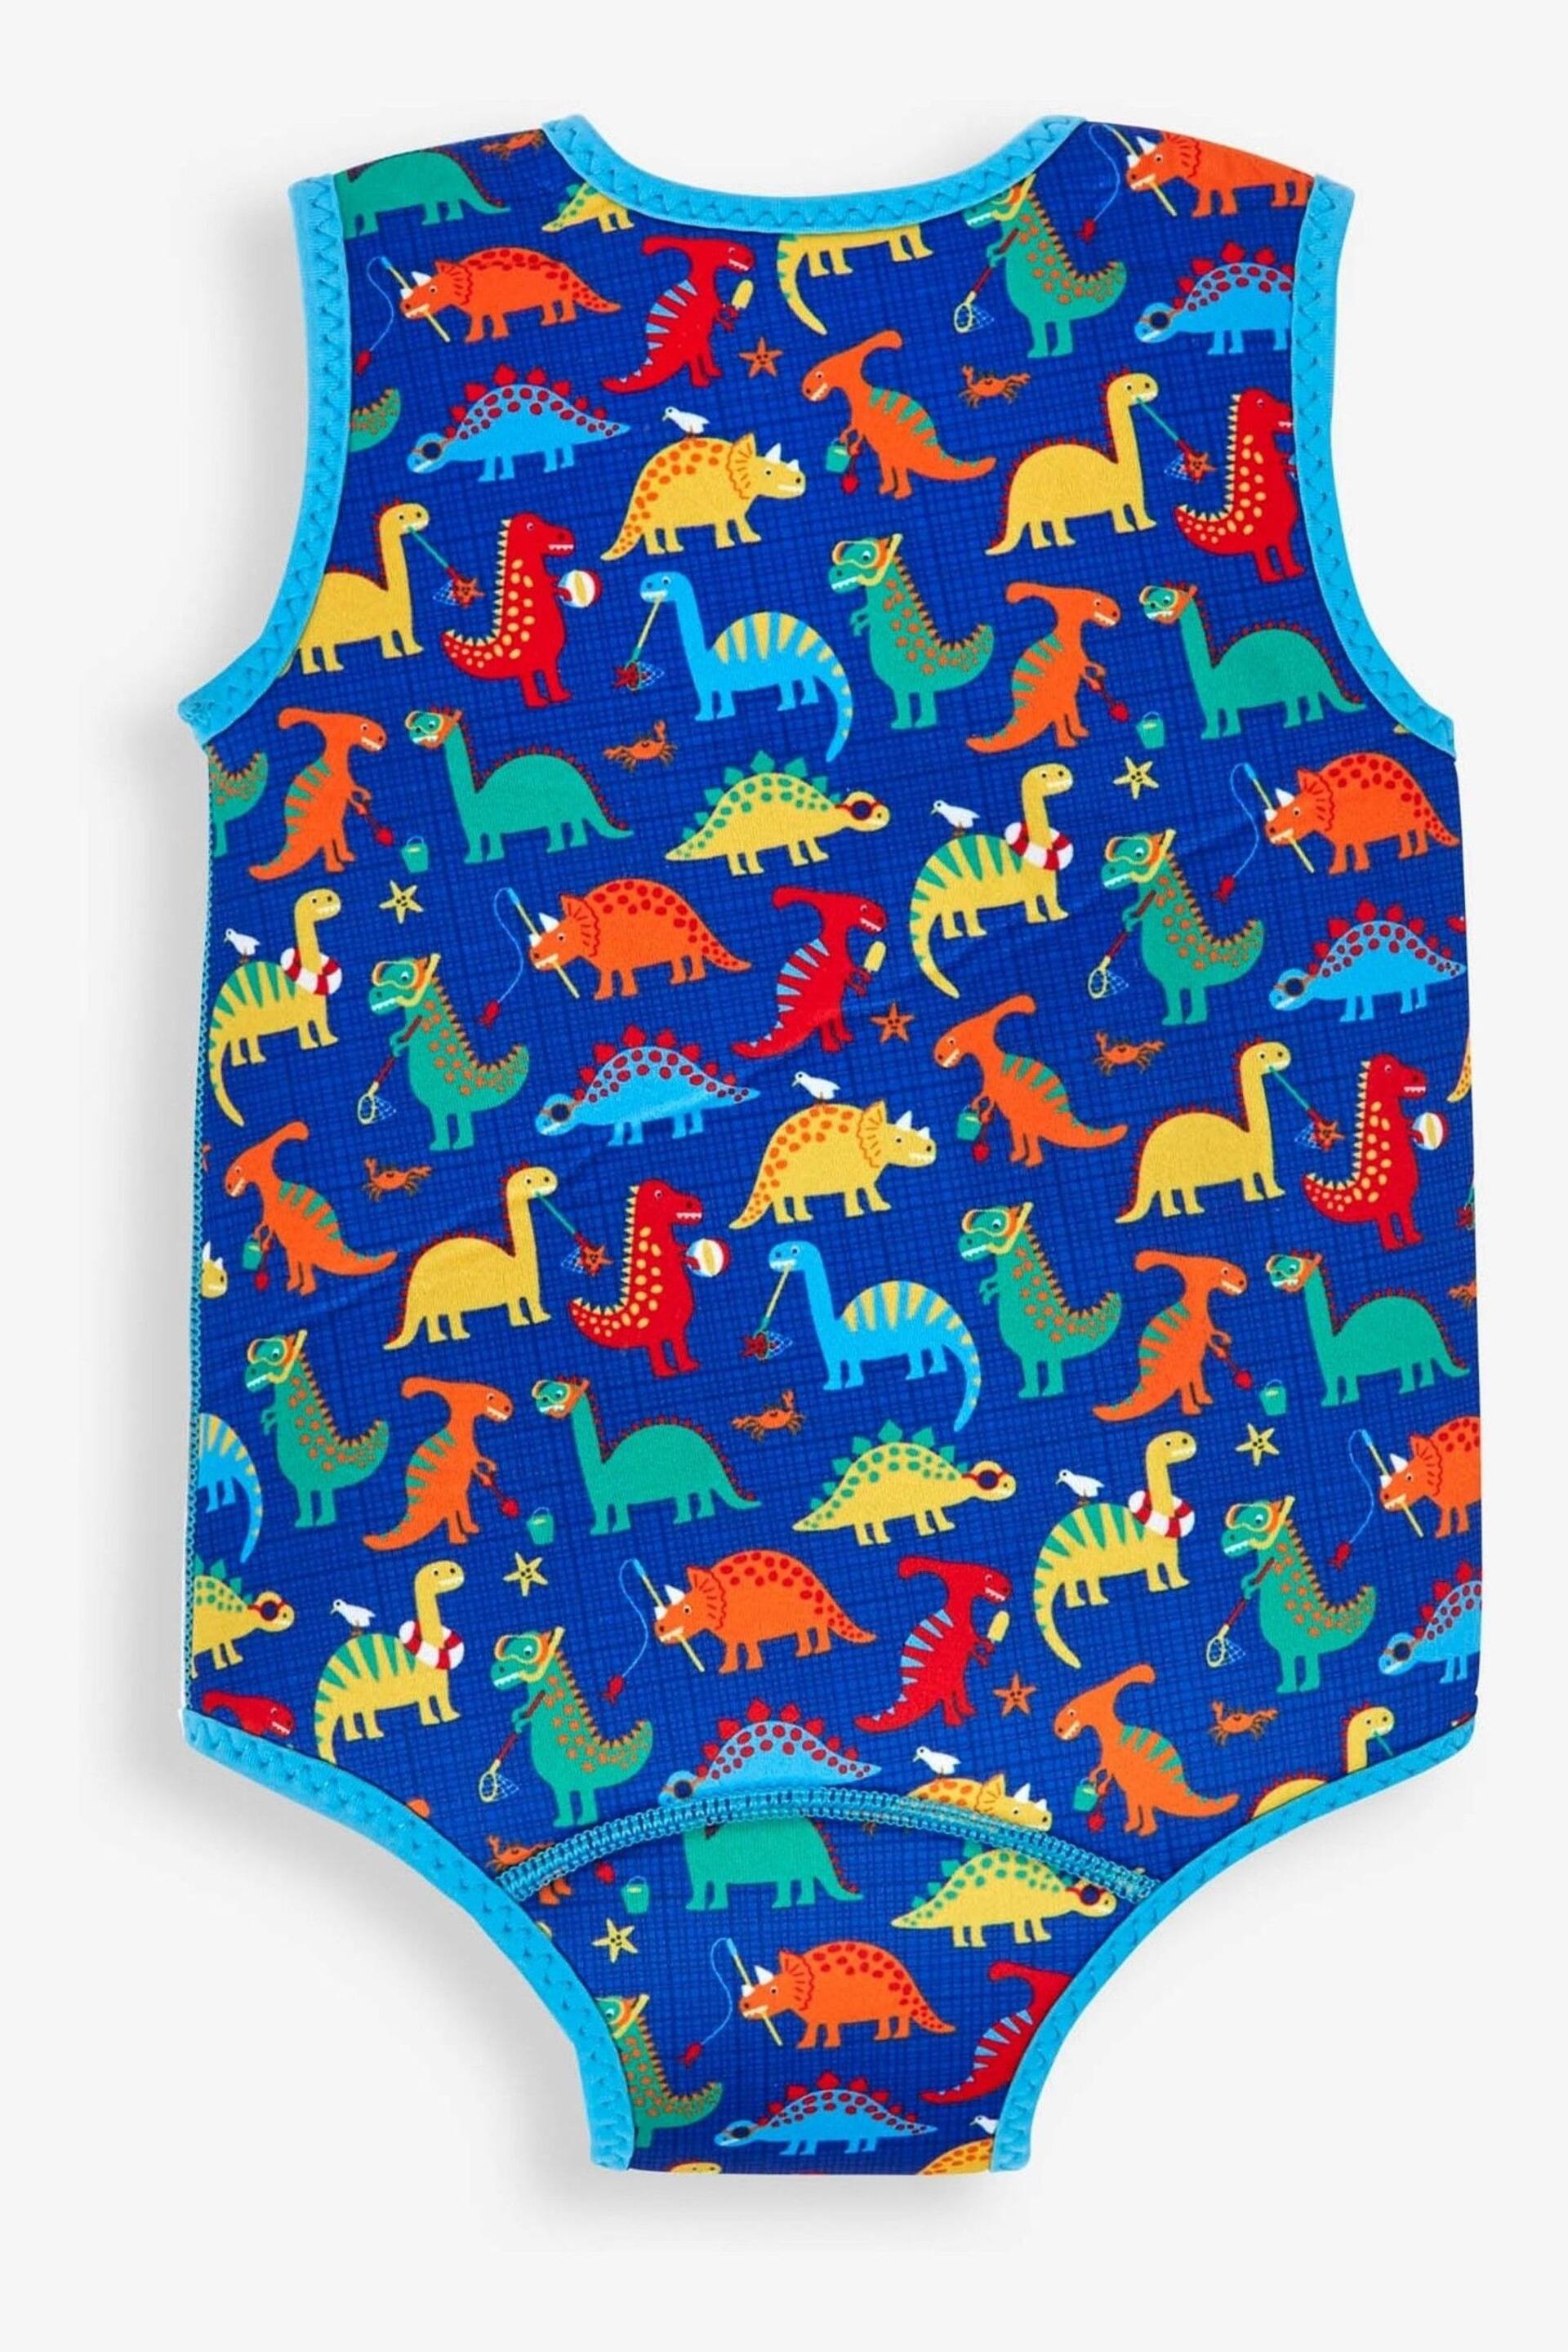 JoJo Maman Bébé Blue Dino Print Baby Wetsuit - Image 3 of 4